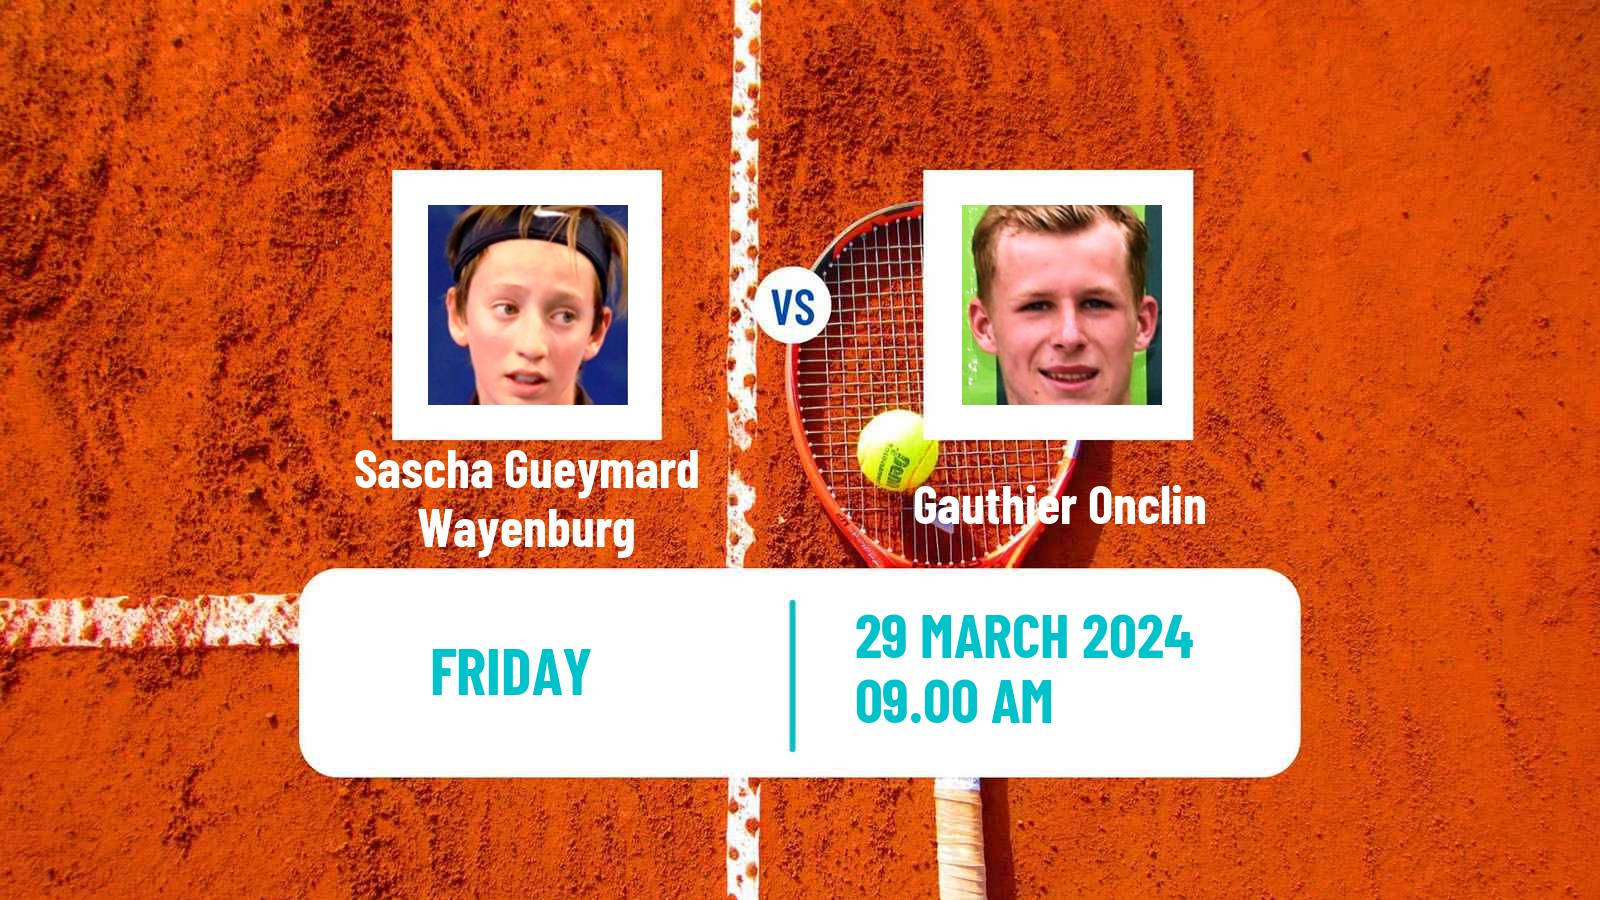 Tennis ITF M25 Saint Dizier Men Sascha Gueymard Wayenburg - Gauthier Onclin